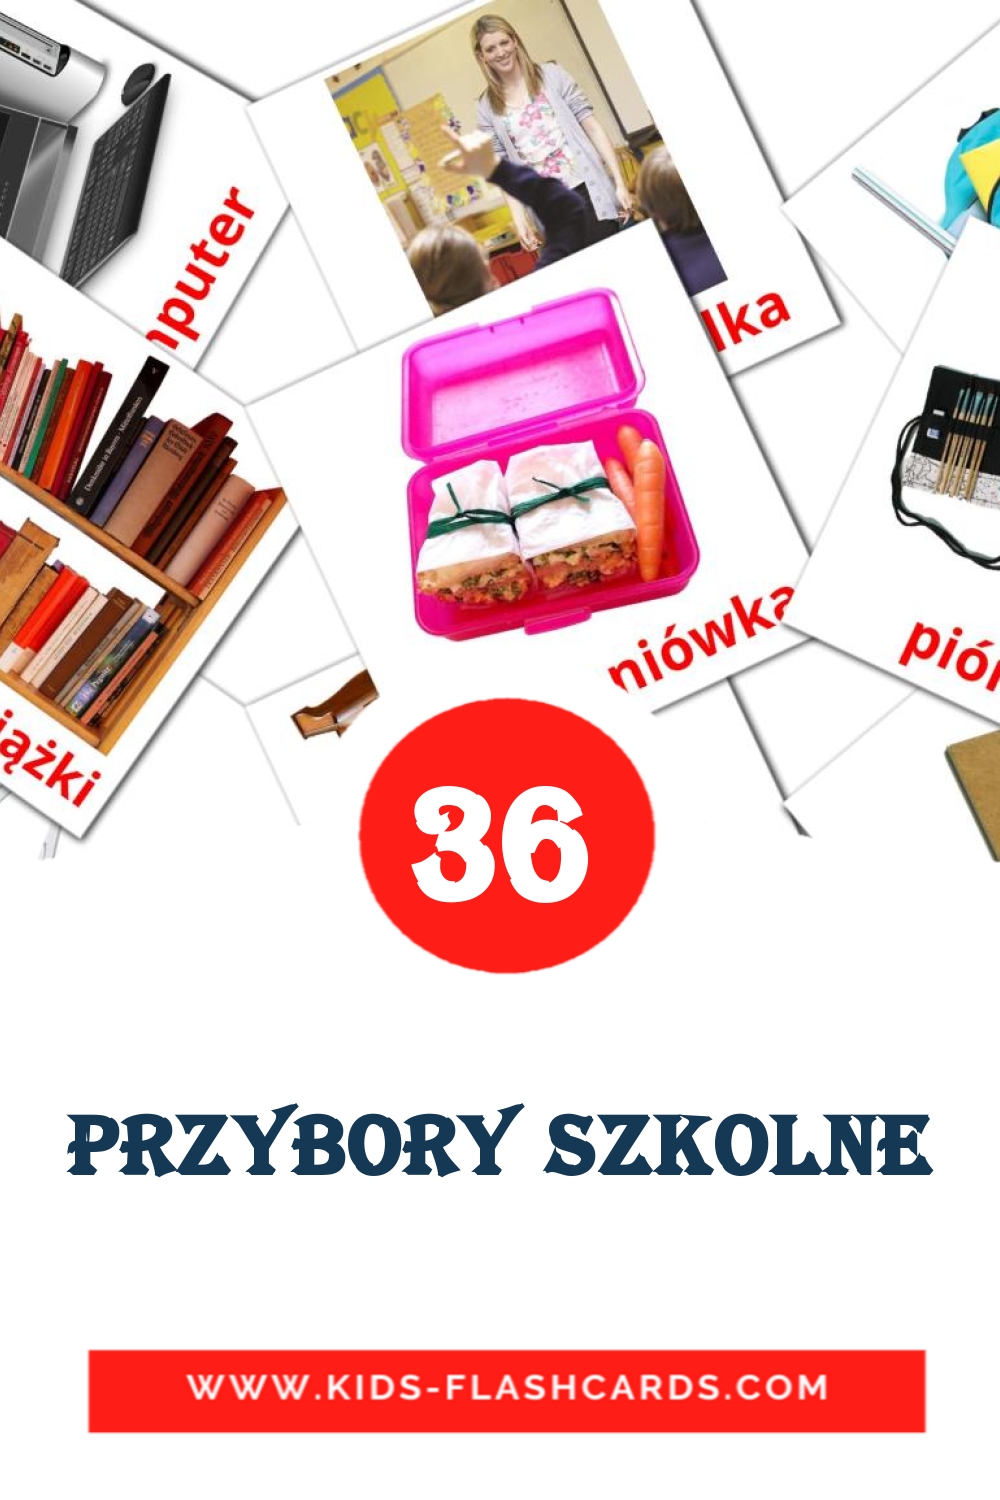 36 tarjetas didacticas de Przybory szkolne para el jardín de infancia en polaco